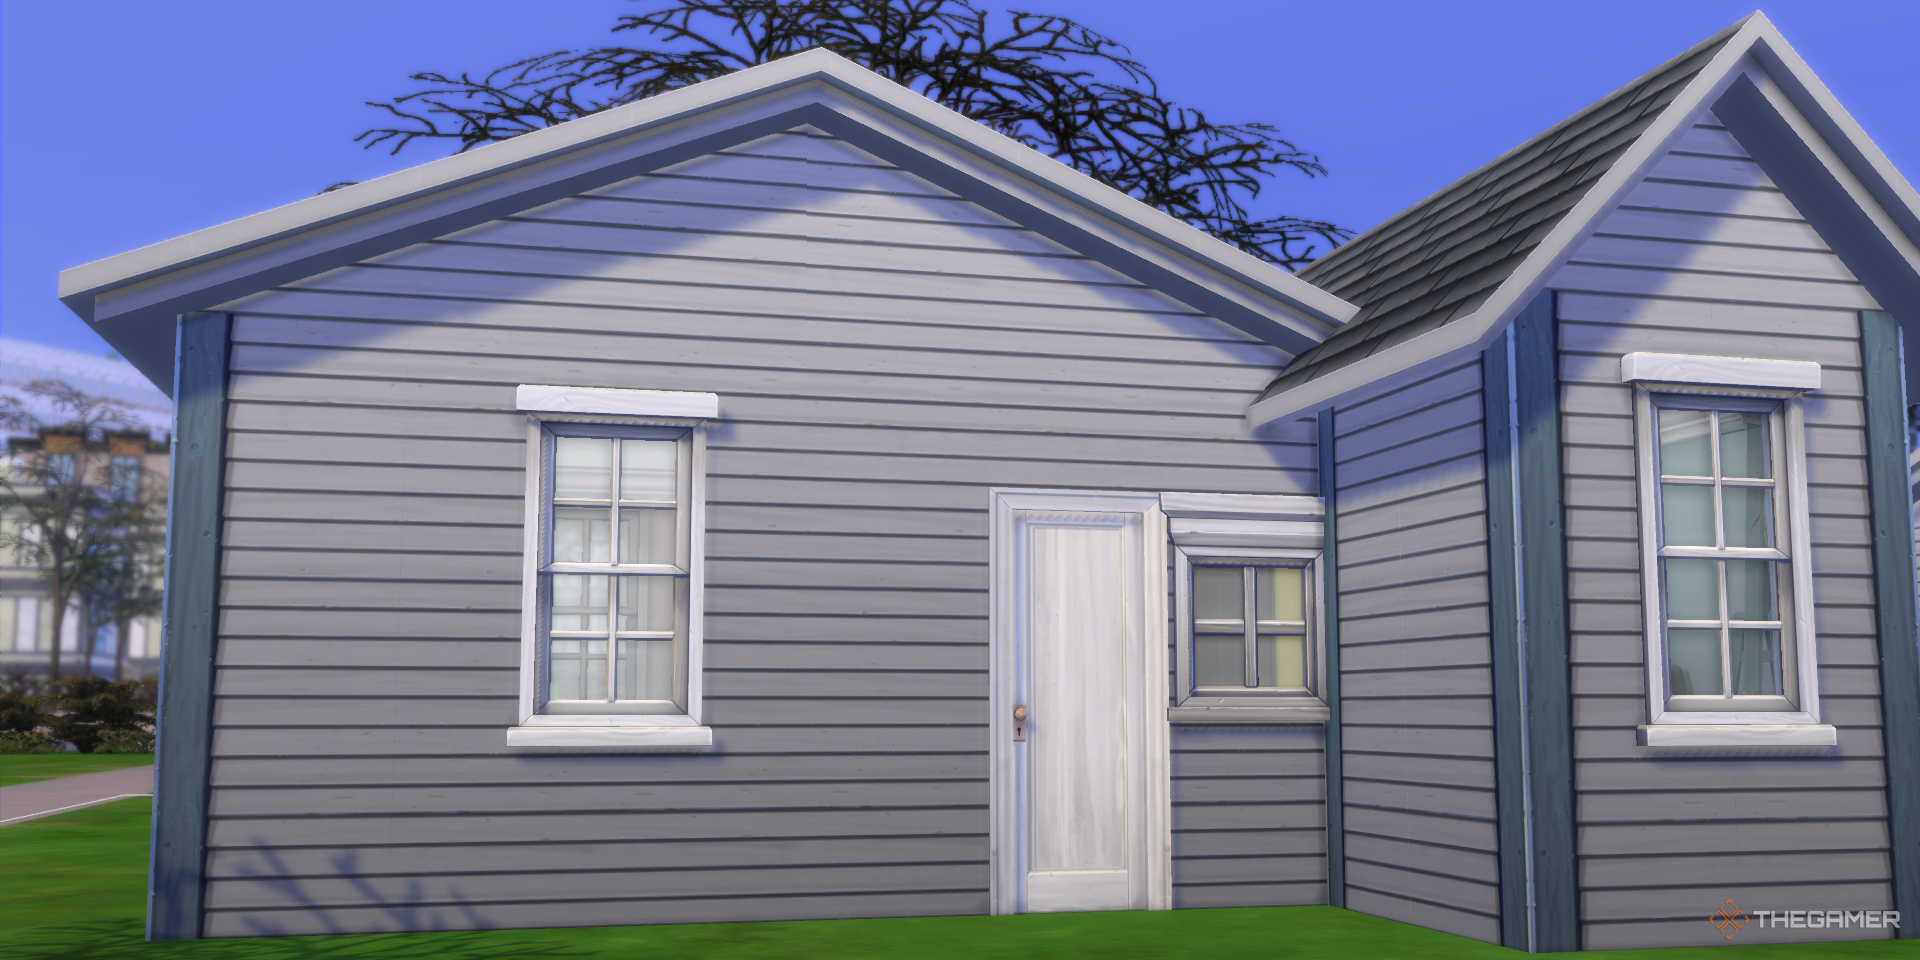 《模拟人生4》中便宜初始房屋的外观